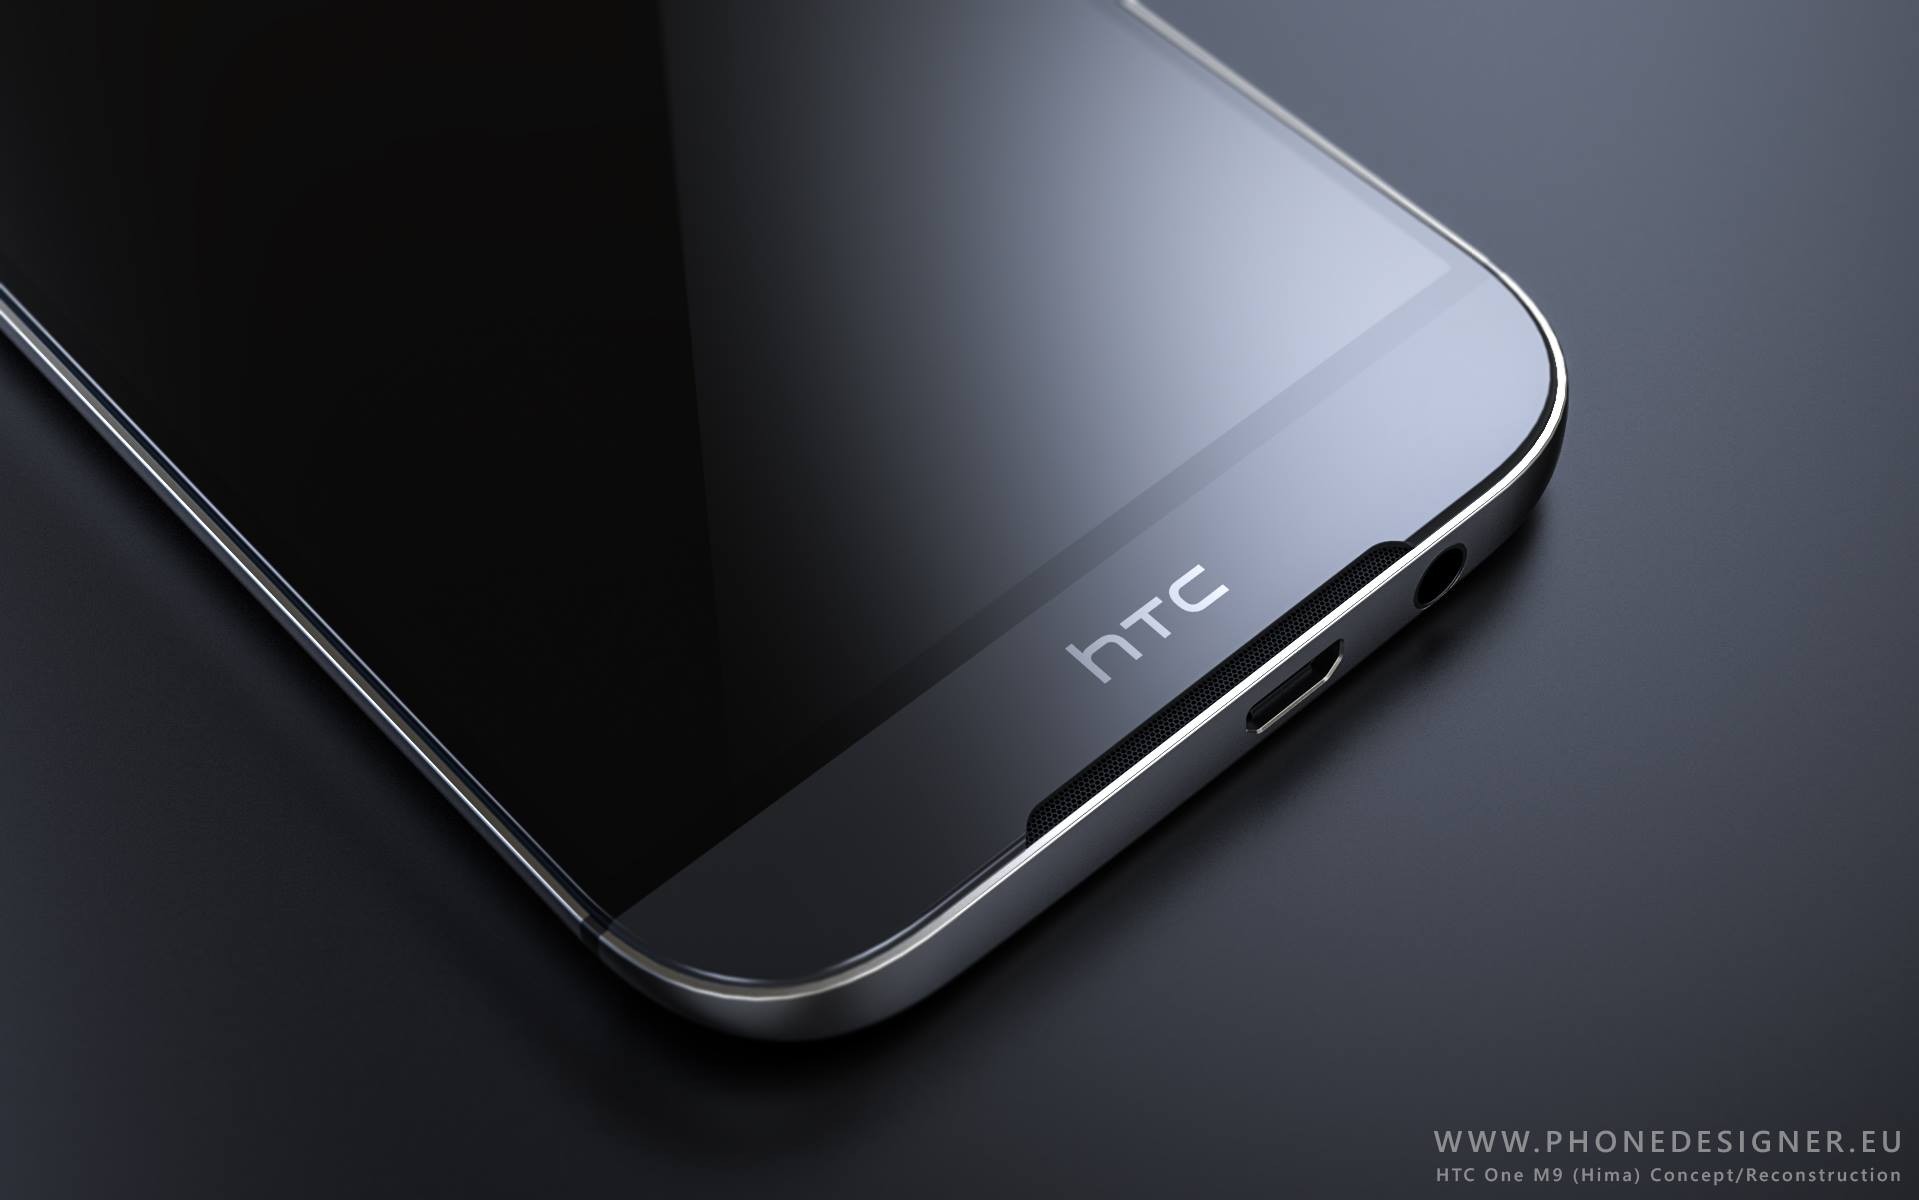 Se filtraron las especificaciones del HTC One M9, vendrá con accesorios a prueba de agua